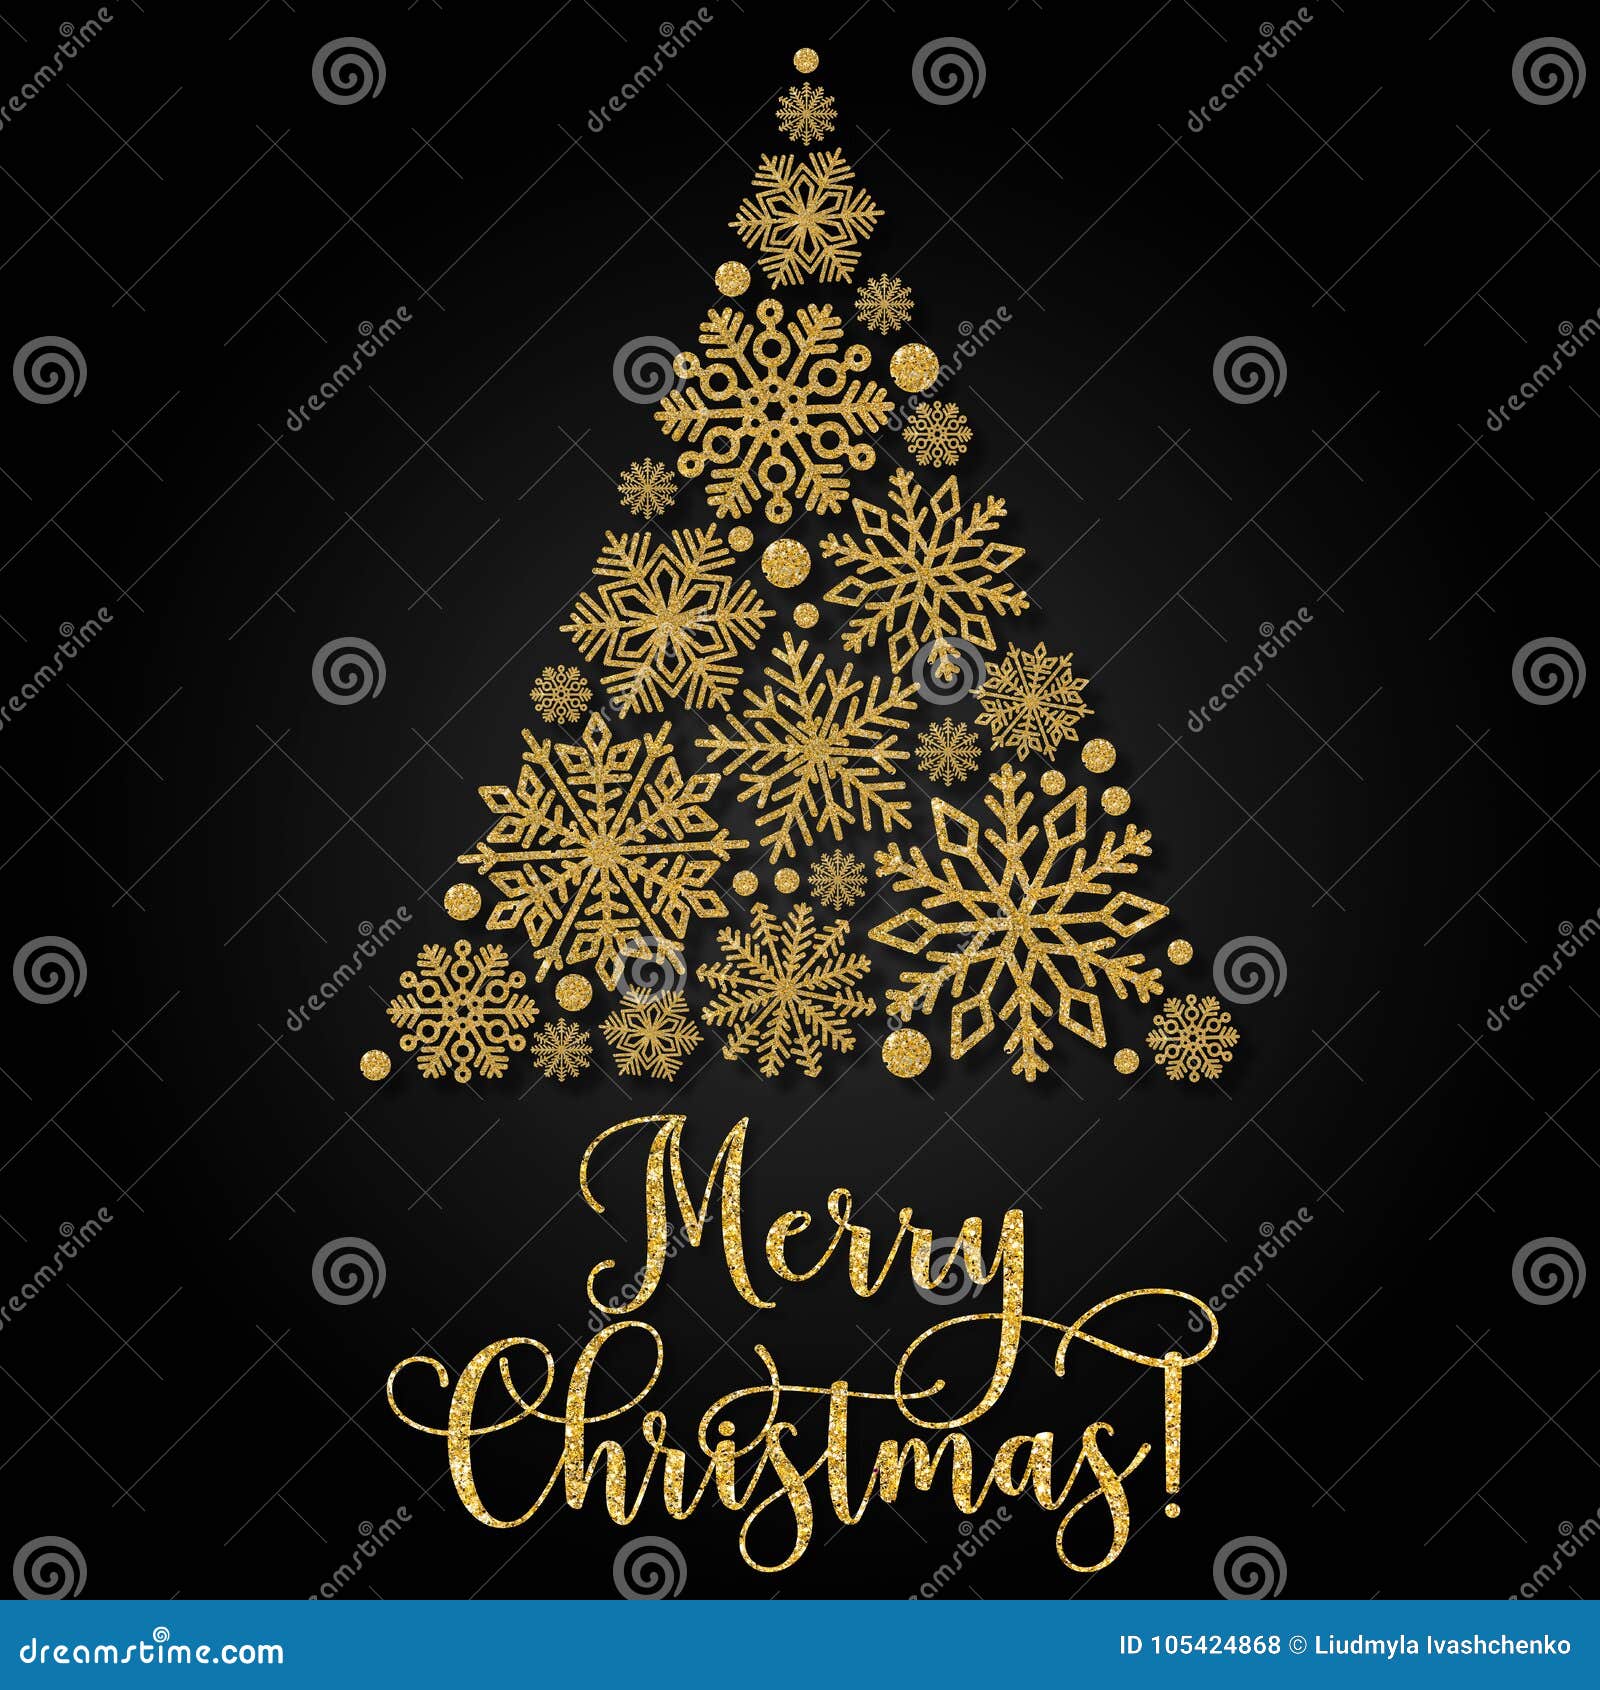 Cartão Com Texto Dourado E árvore De Natal Abstrata Em Um Fundo Preto  Ilustração Stock - Ilustração de luxo, sequências: 105424868